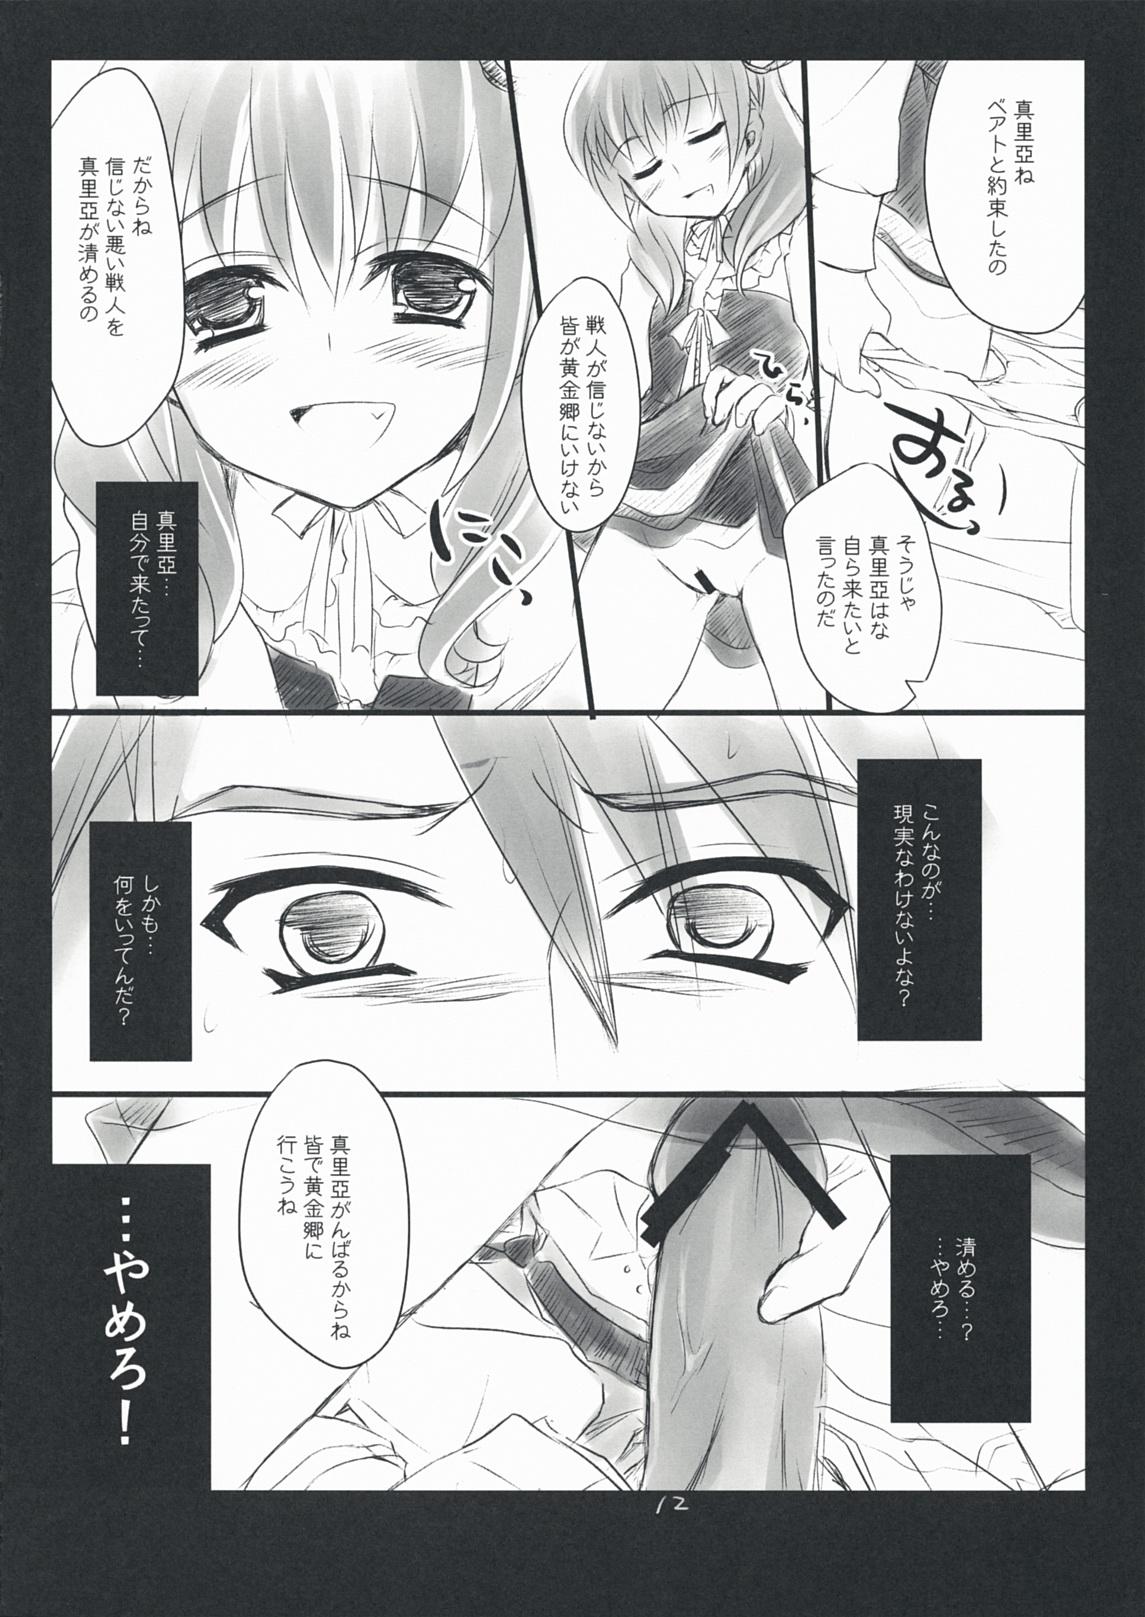 Cream Pie The Queen Of Nightmare - Umineko no naku koro ni Pendeja - Page 12